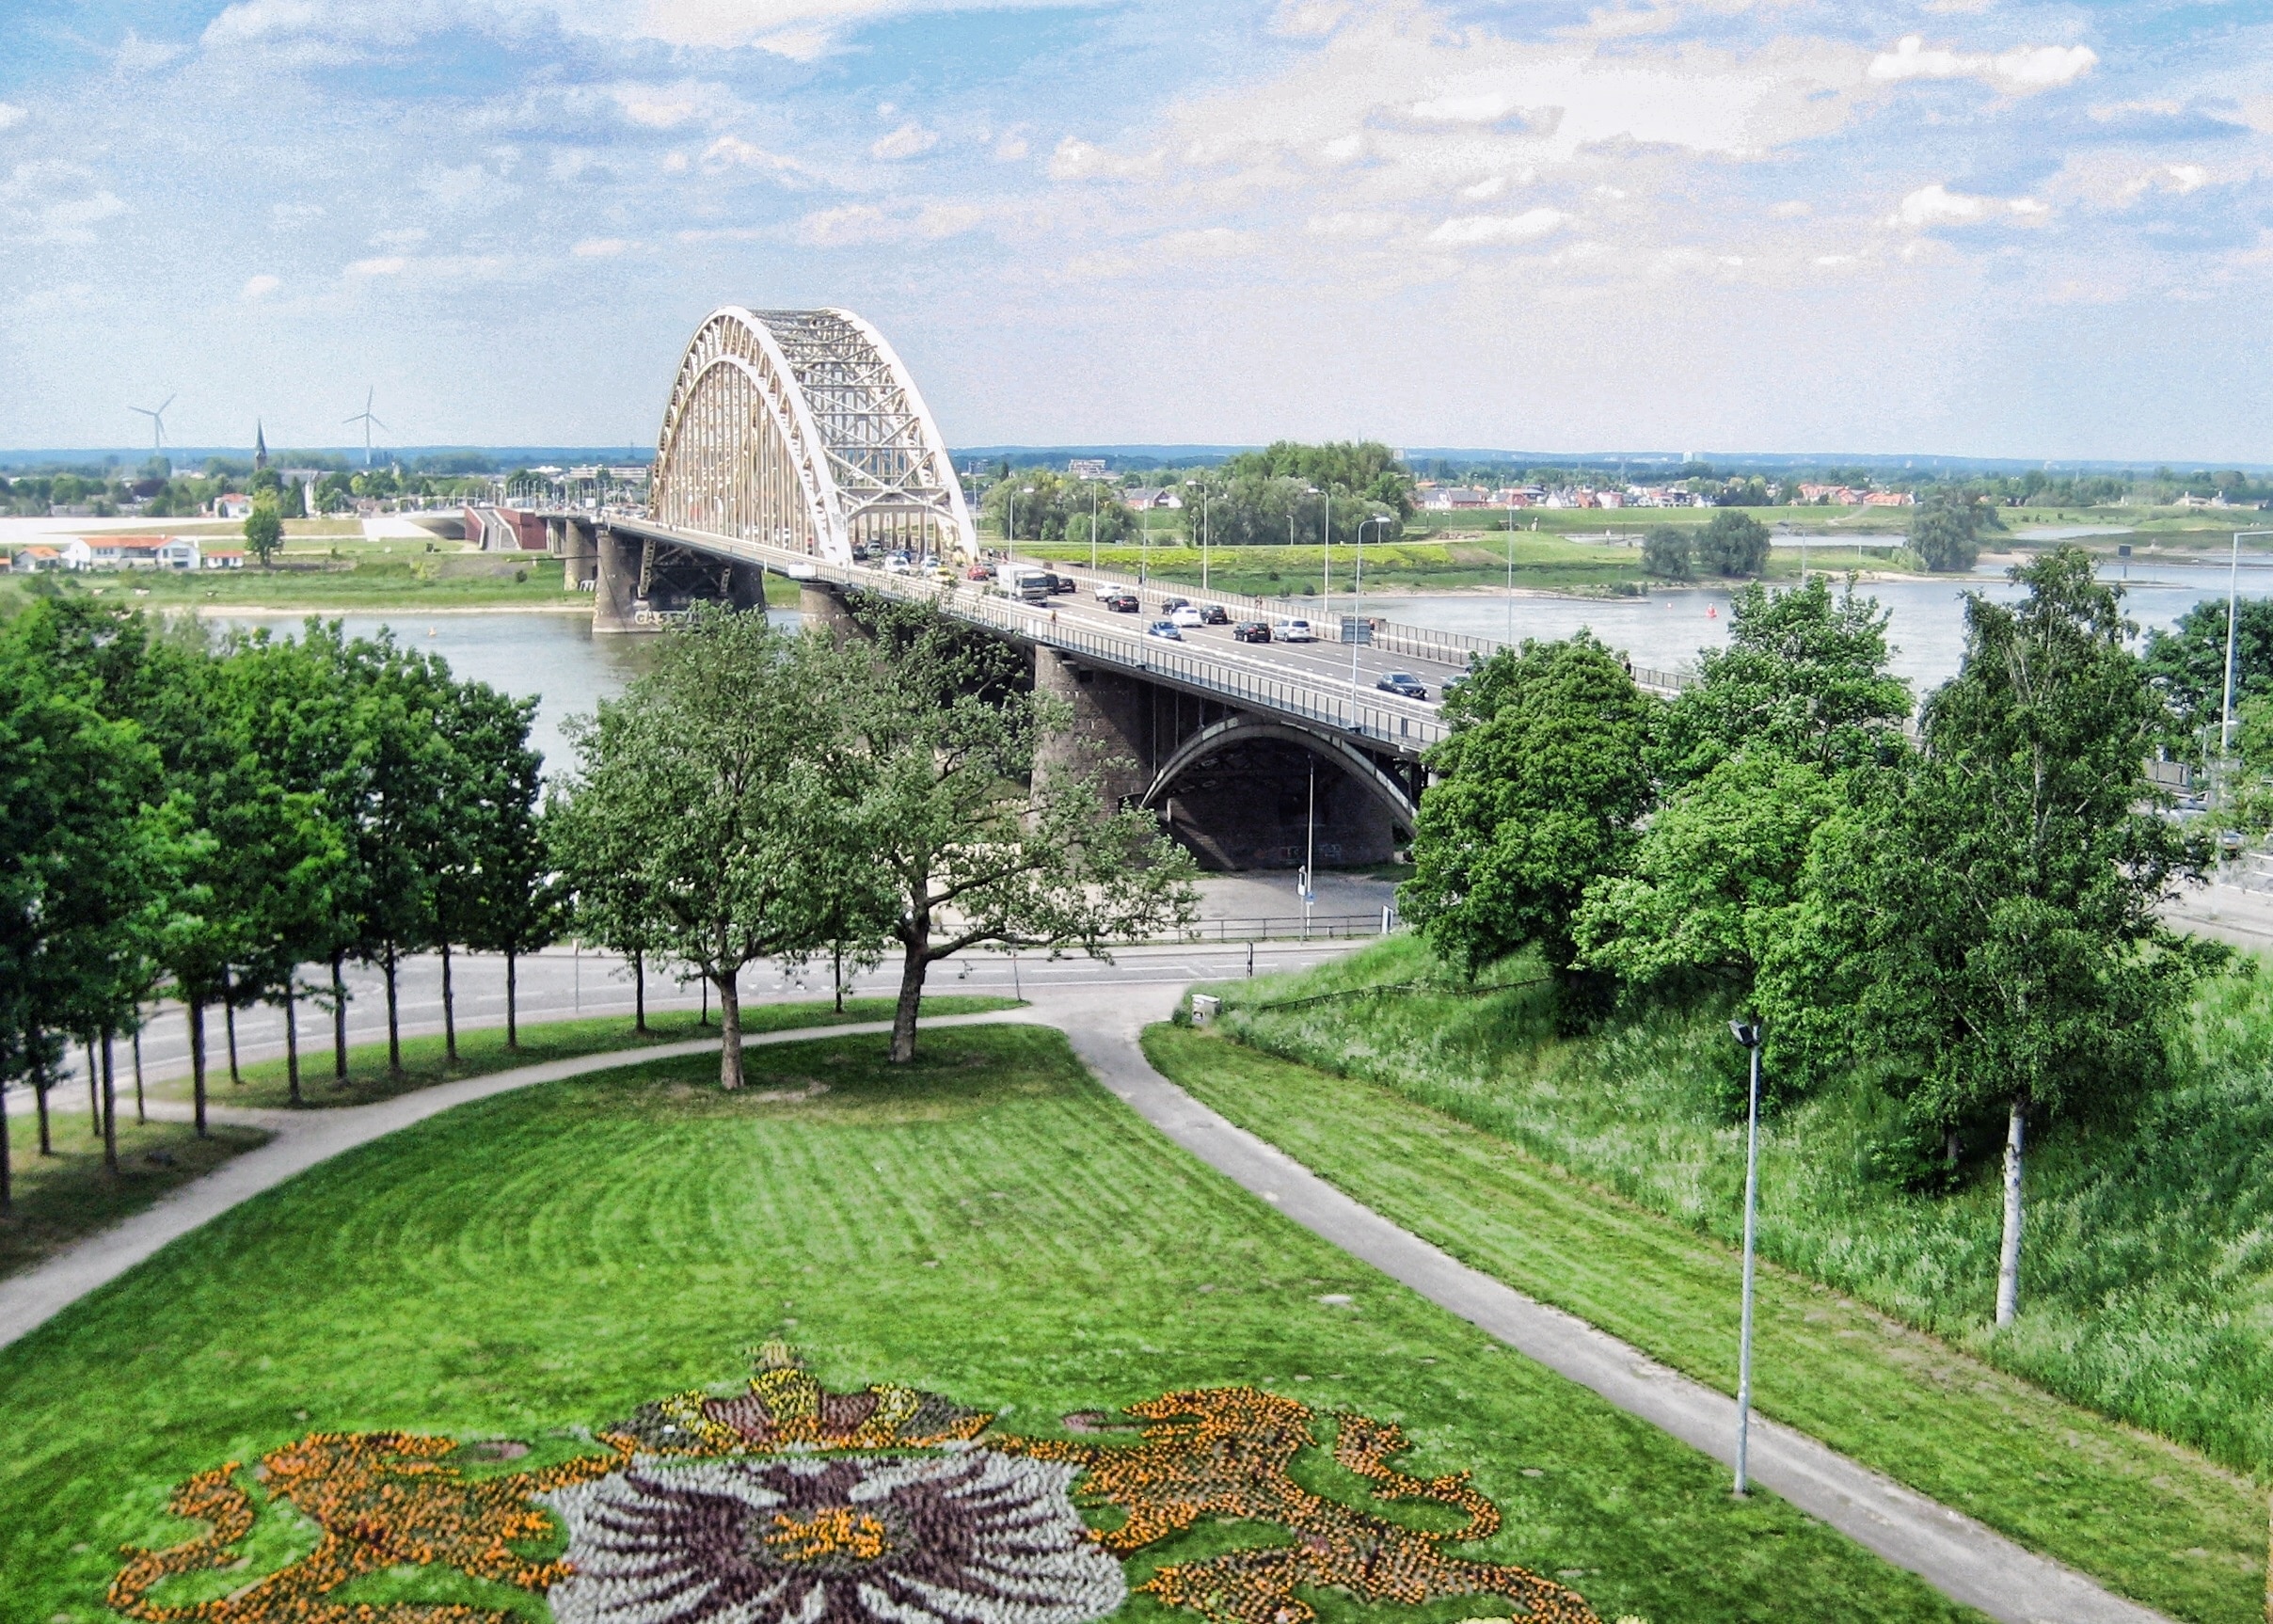 View overlooking the Waal Bridge in Nijmegen, Netherlands. #BVStrove